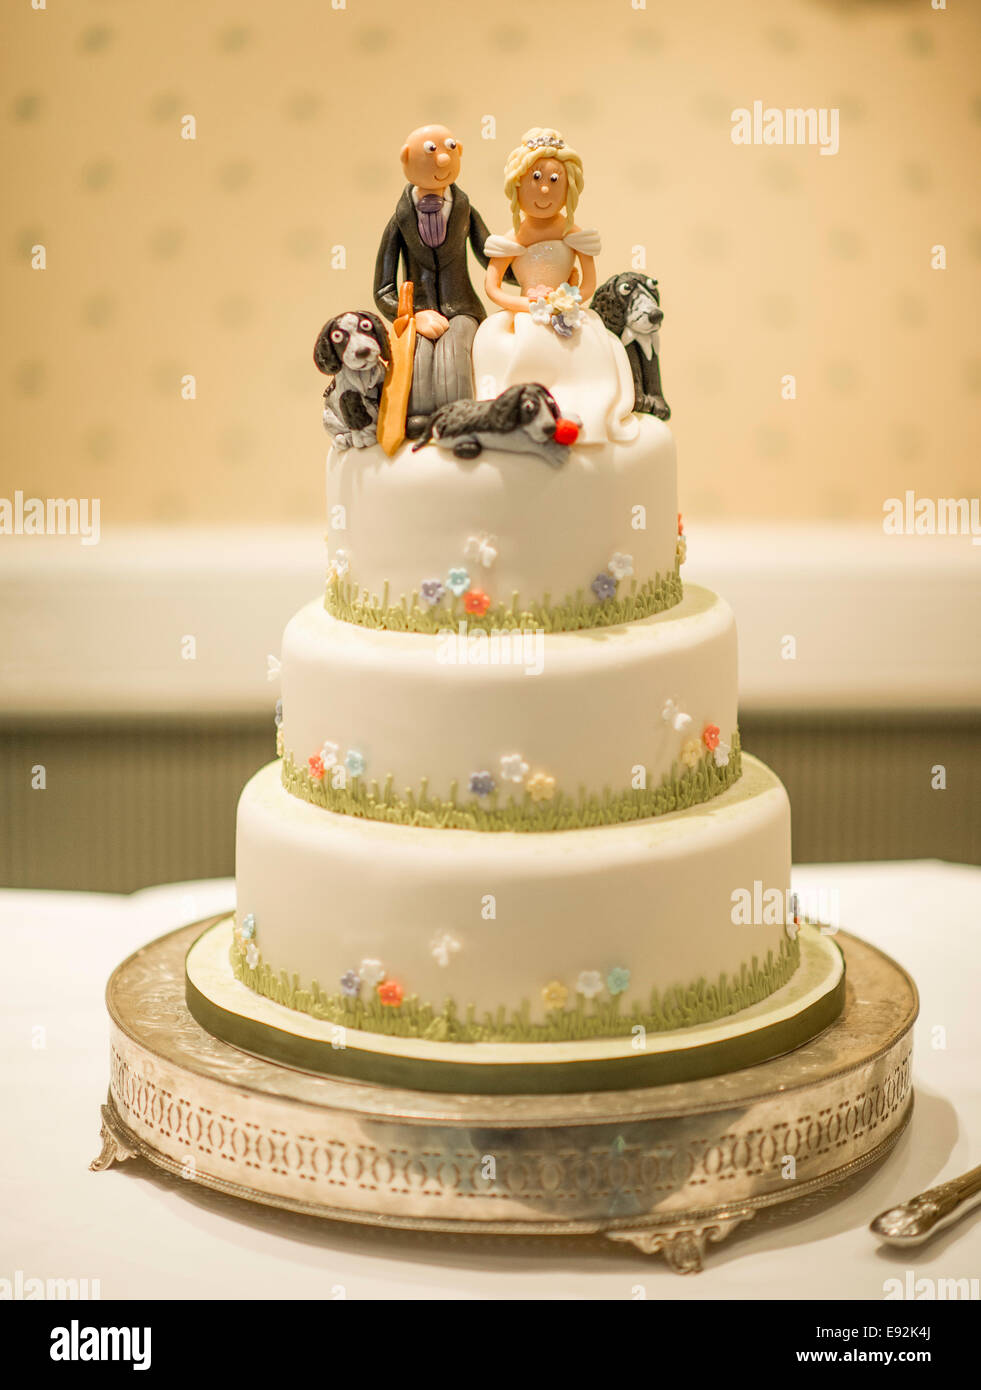 Gâteau de mariage avec couple sur le dessus et les chiens Banque D'Images